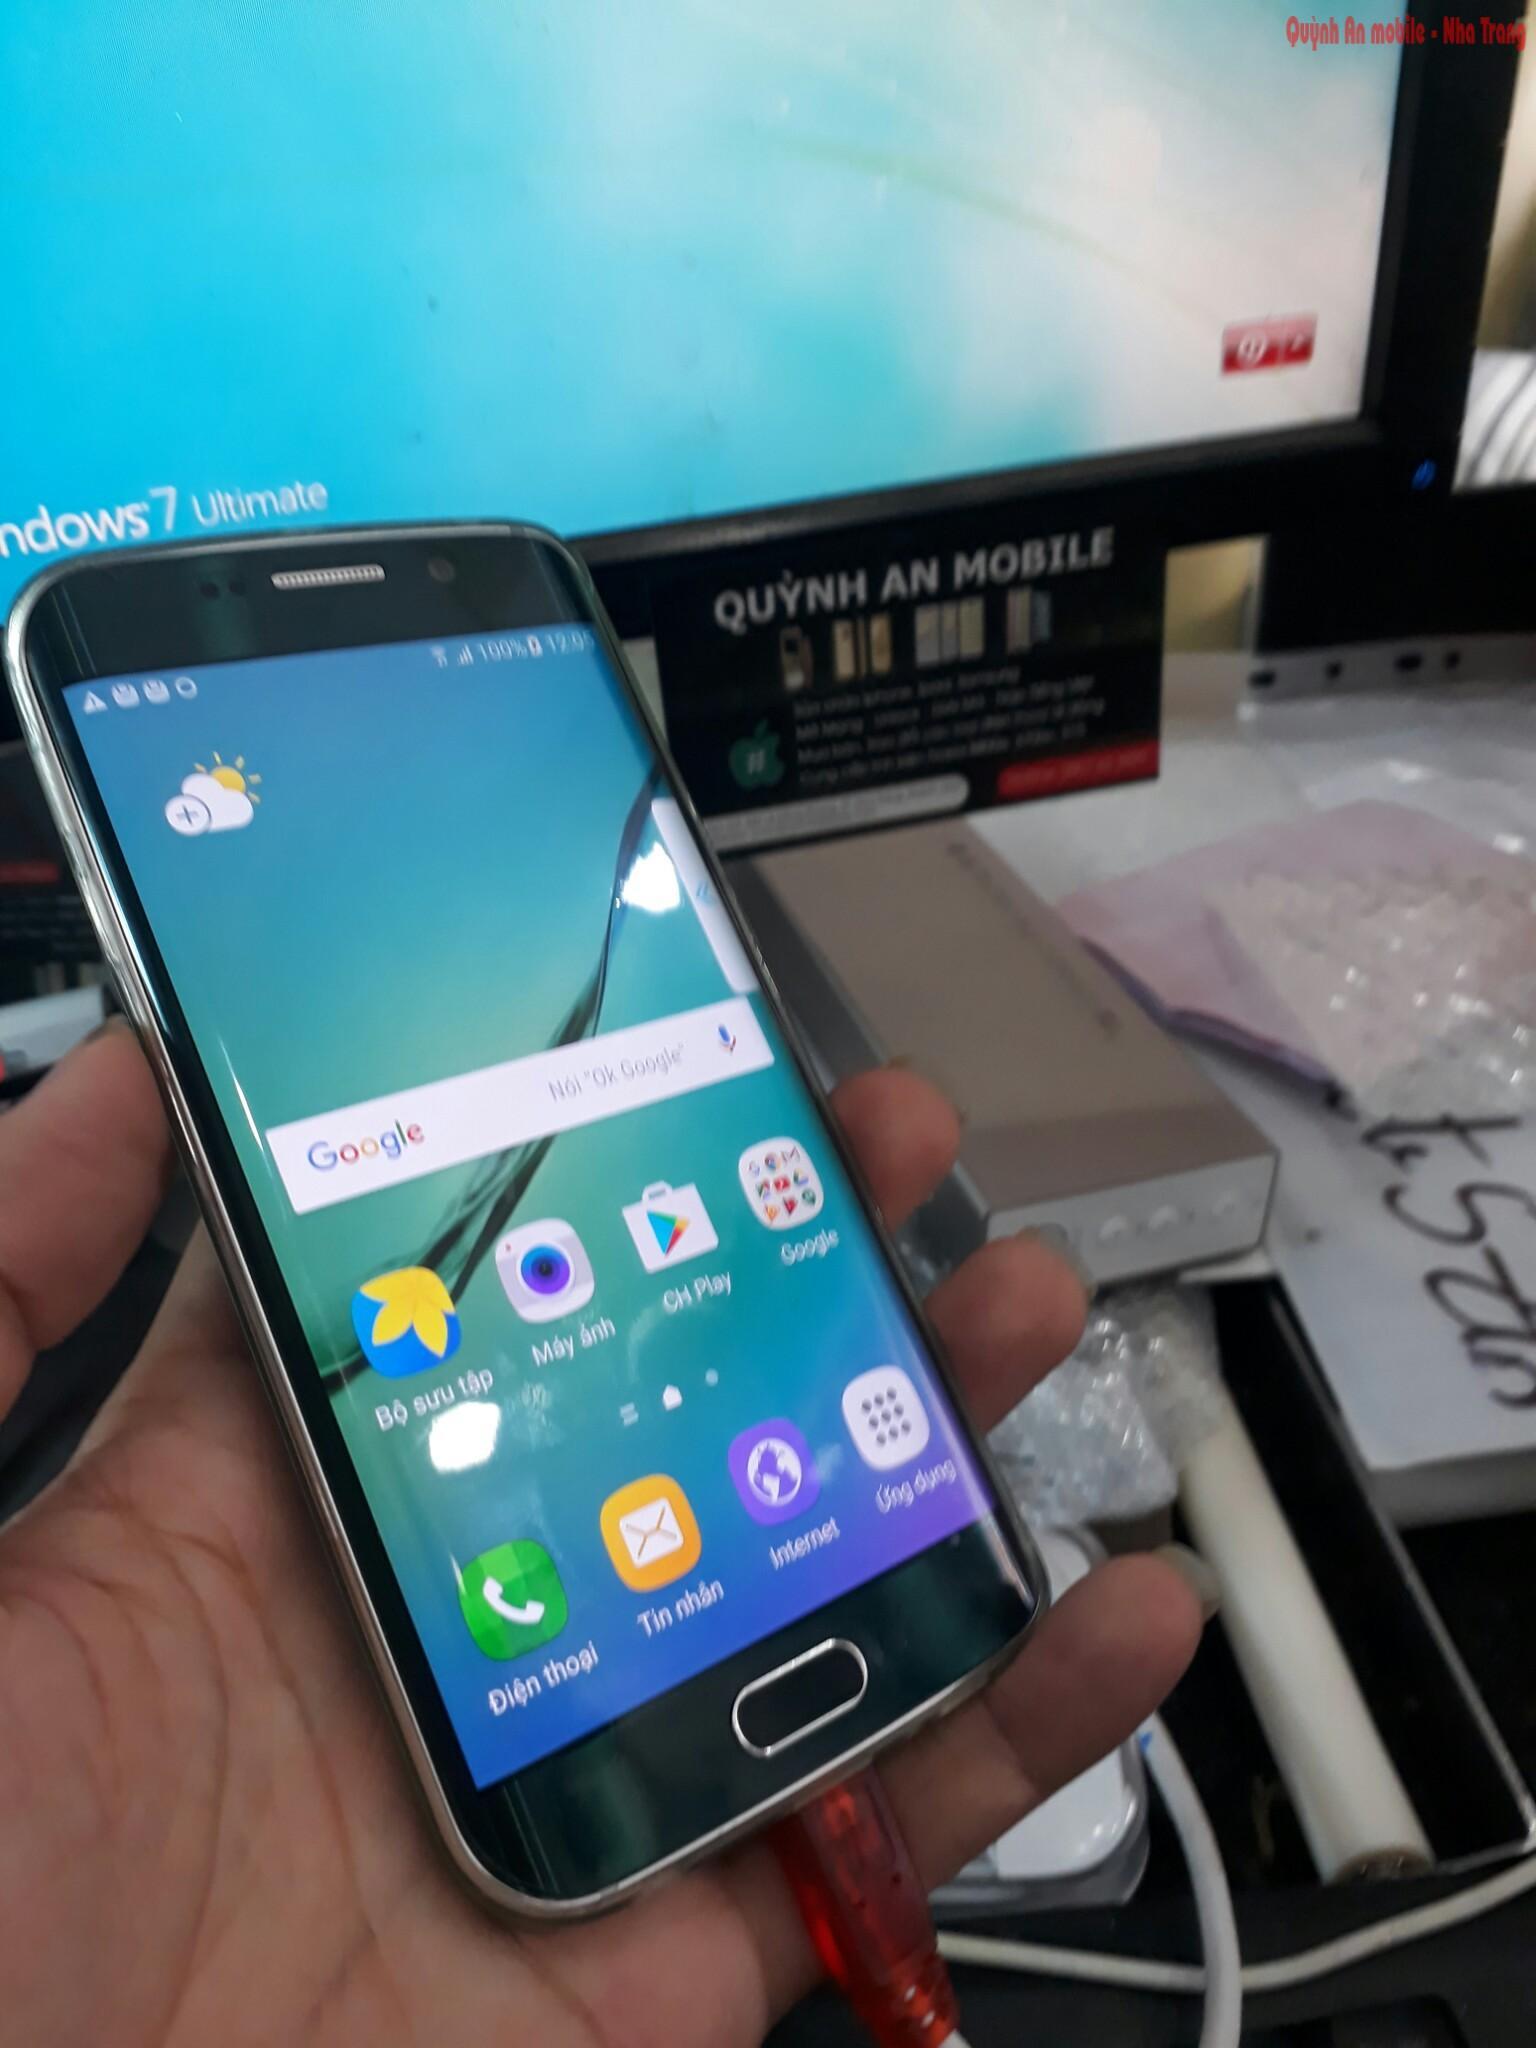 Máy Samsung galaxy S6 edge SC-04G xách tay về đã được nạp tiếng Việt sử dụng như máy quốc tế